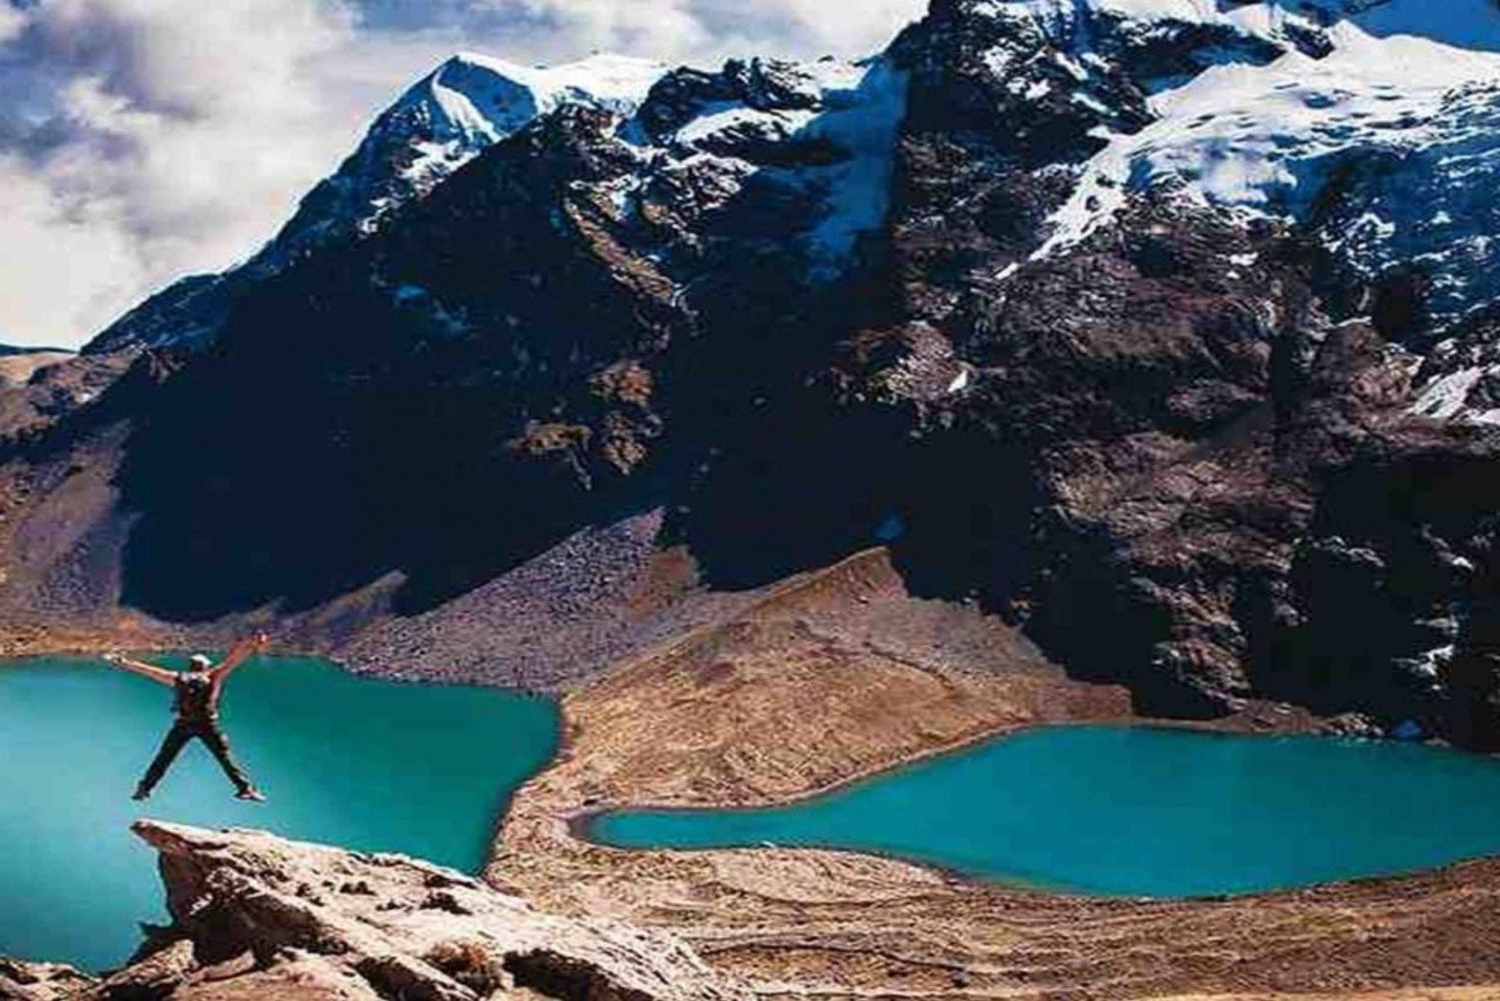 De Cusco || La magie des 7 lacs d'Ausangate - Journée complète